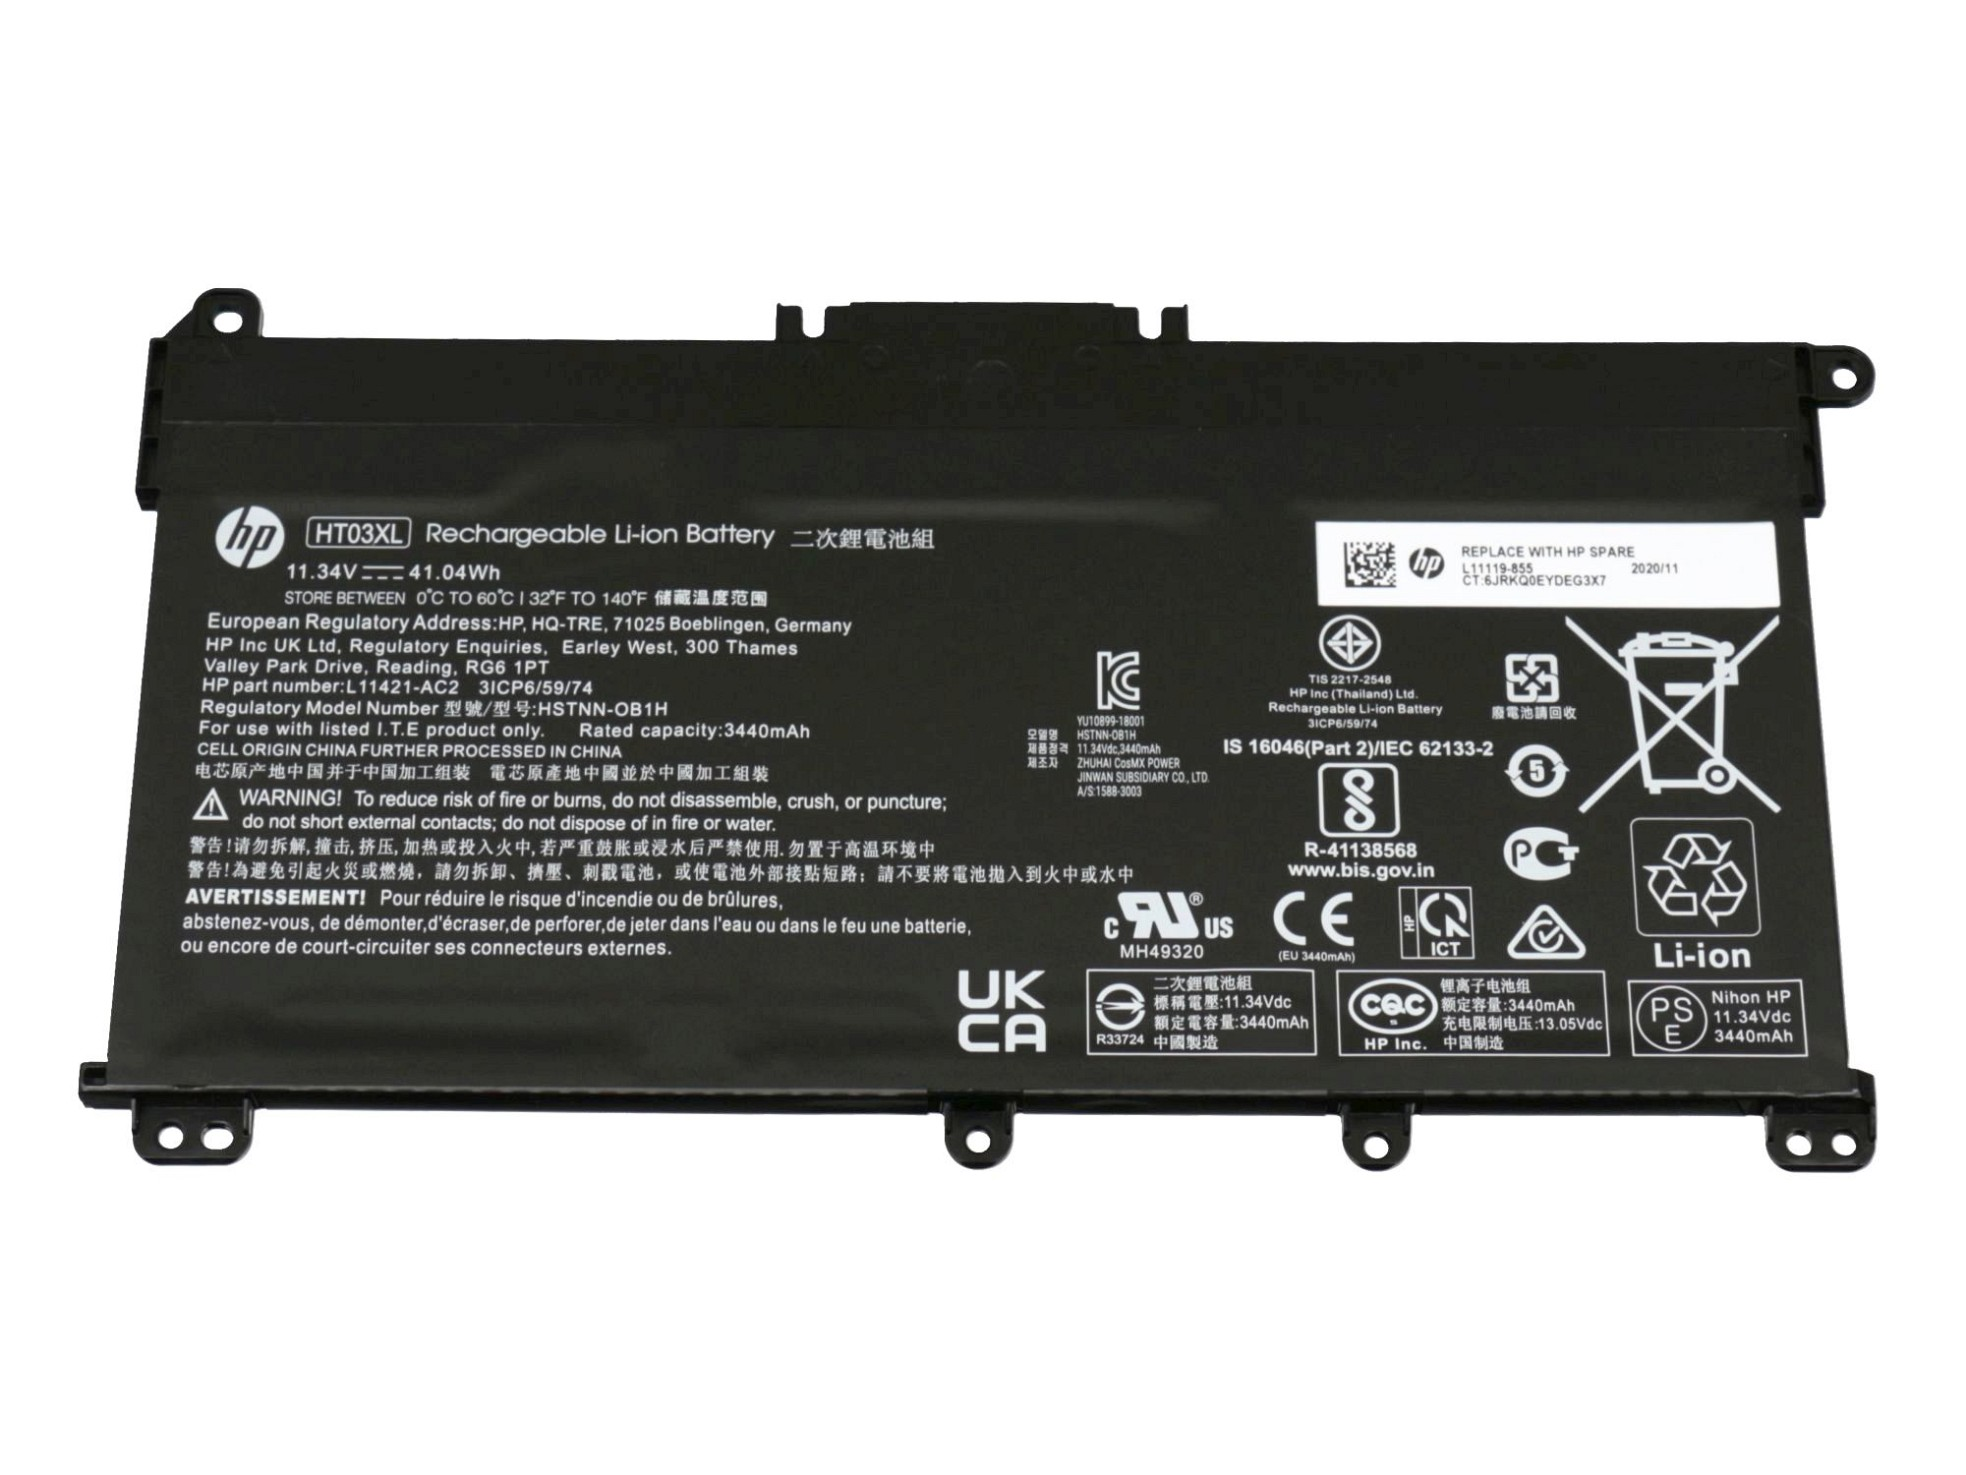 HP L11421-542 Original Li-Polymer 3420 HT03XL mAh Volt, 11.34 Akku